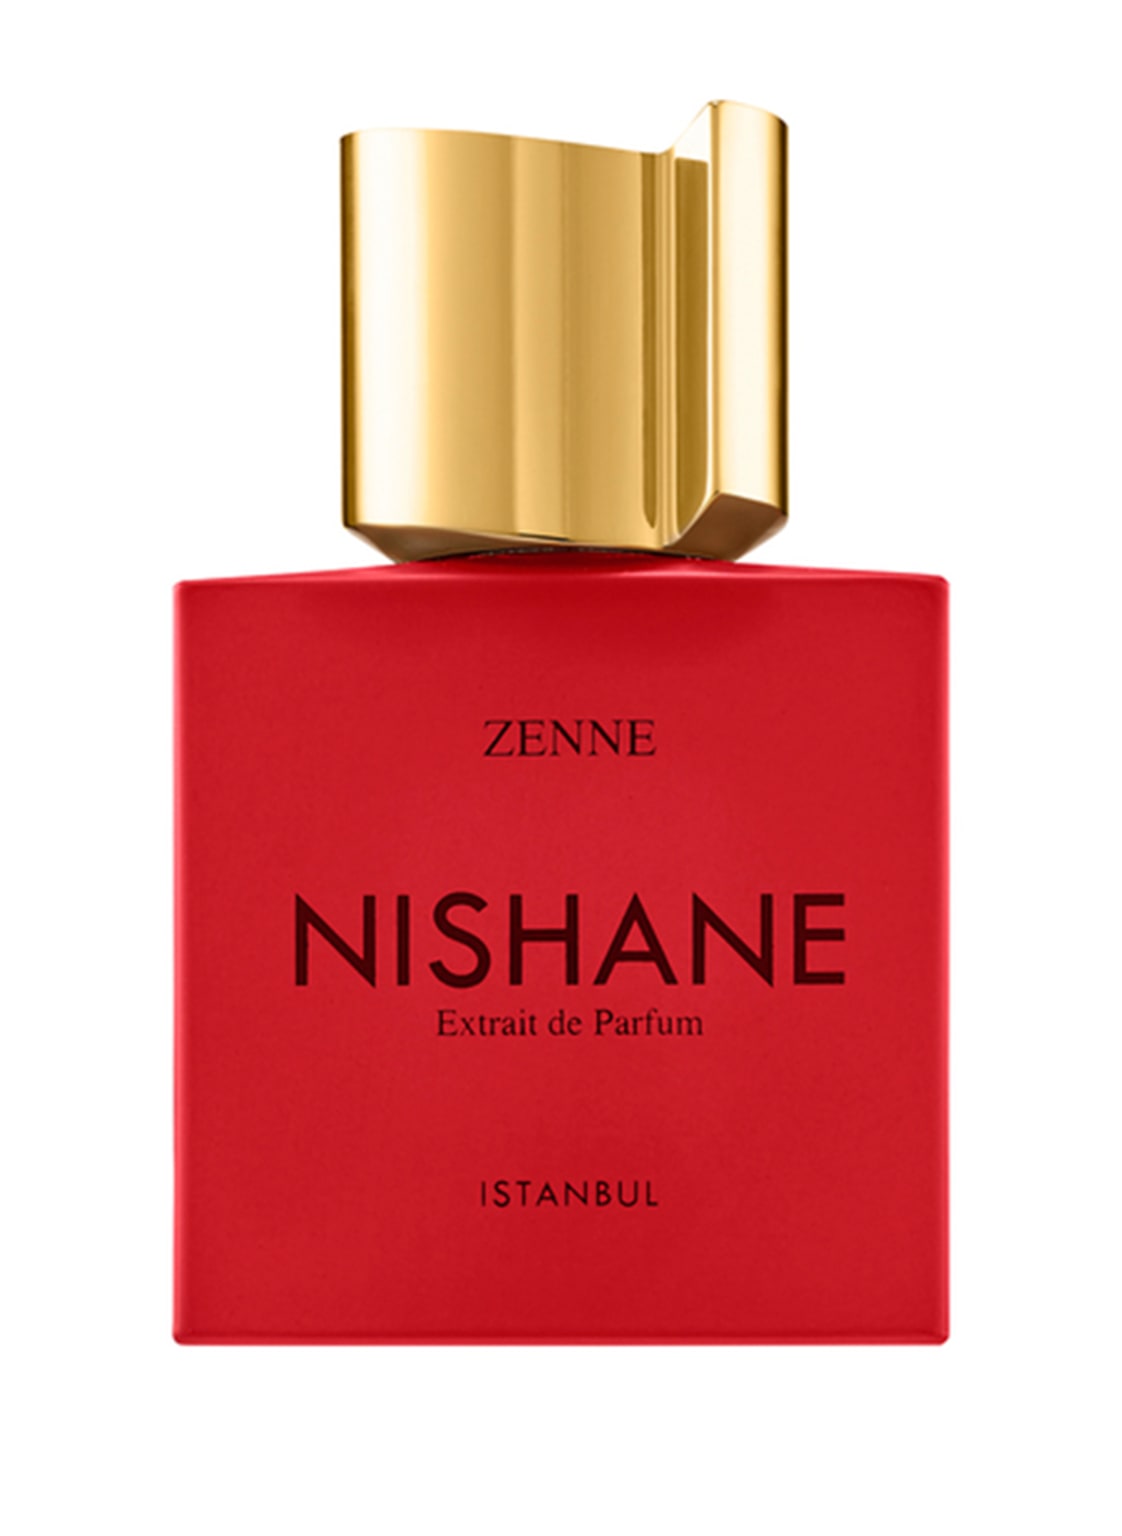 Nishane Zenne Extrait de Parfum 50 ml von NISHANE